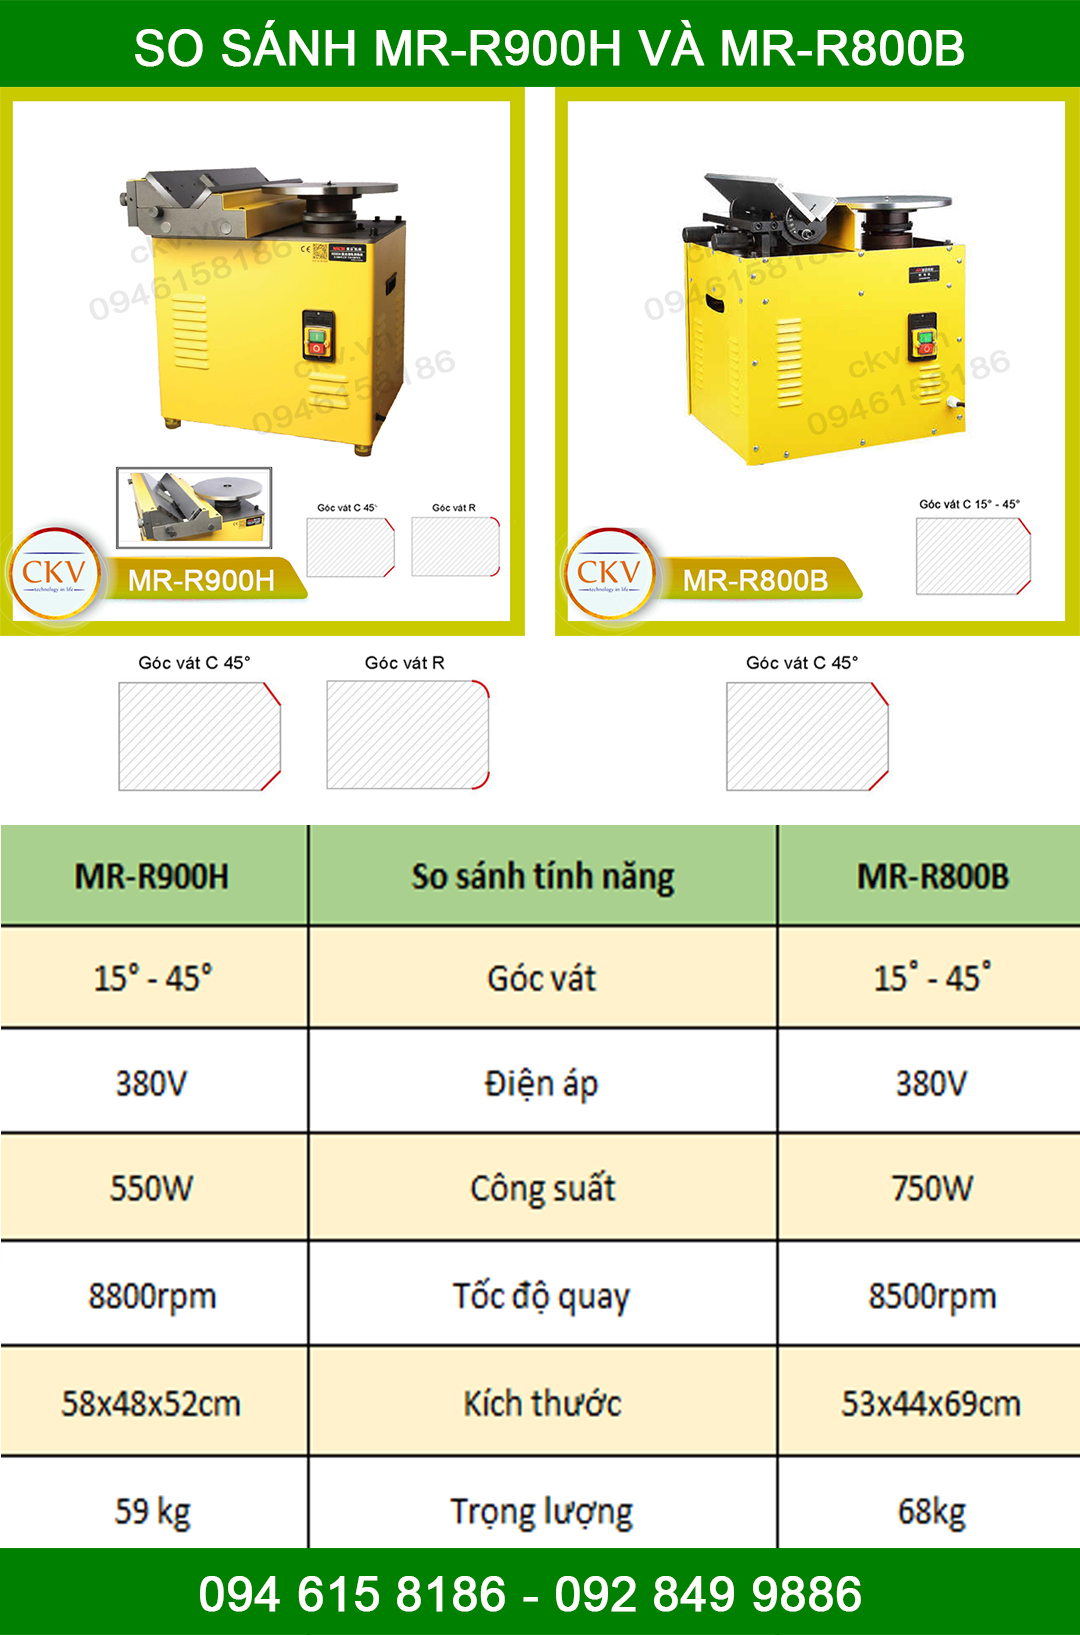 So sánh MR-R800B và MR-R900H